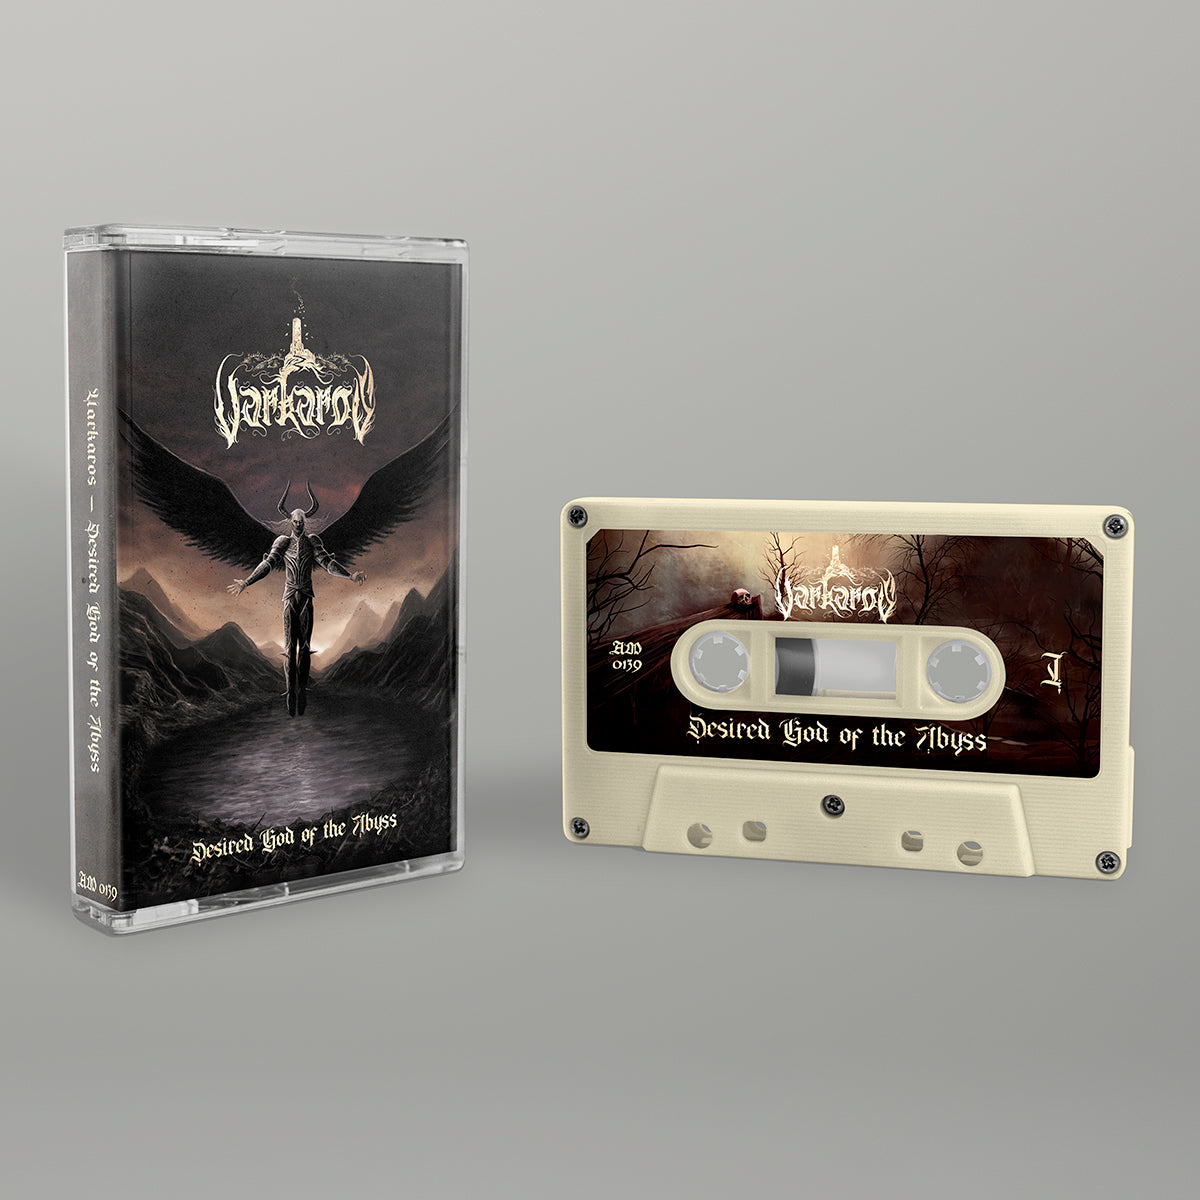 VARKAROS "Desired God of the Abyss" Cassette Tape